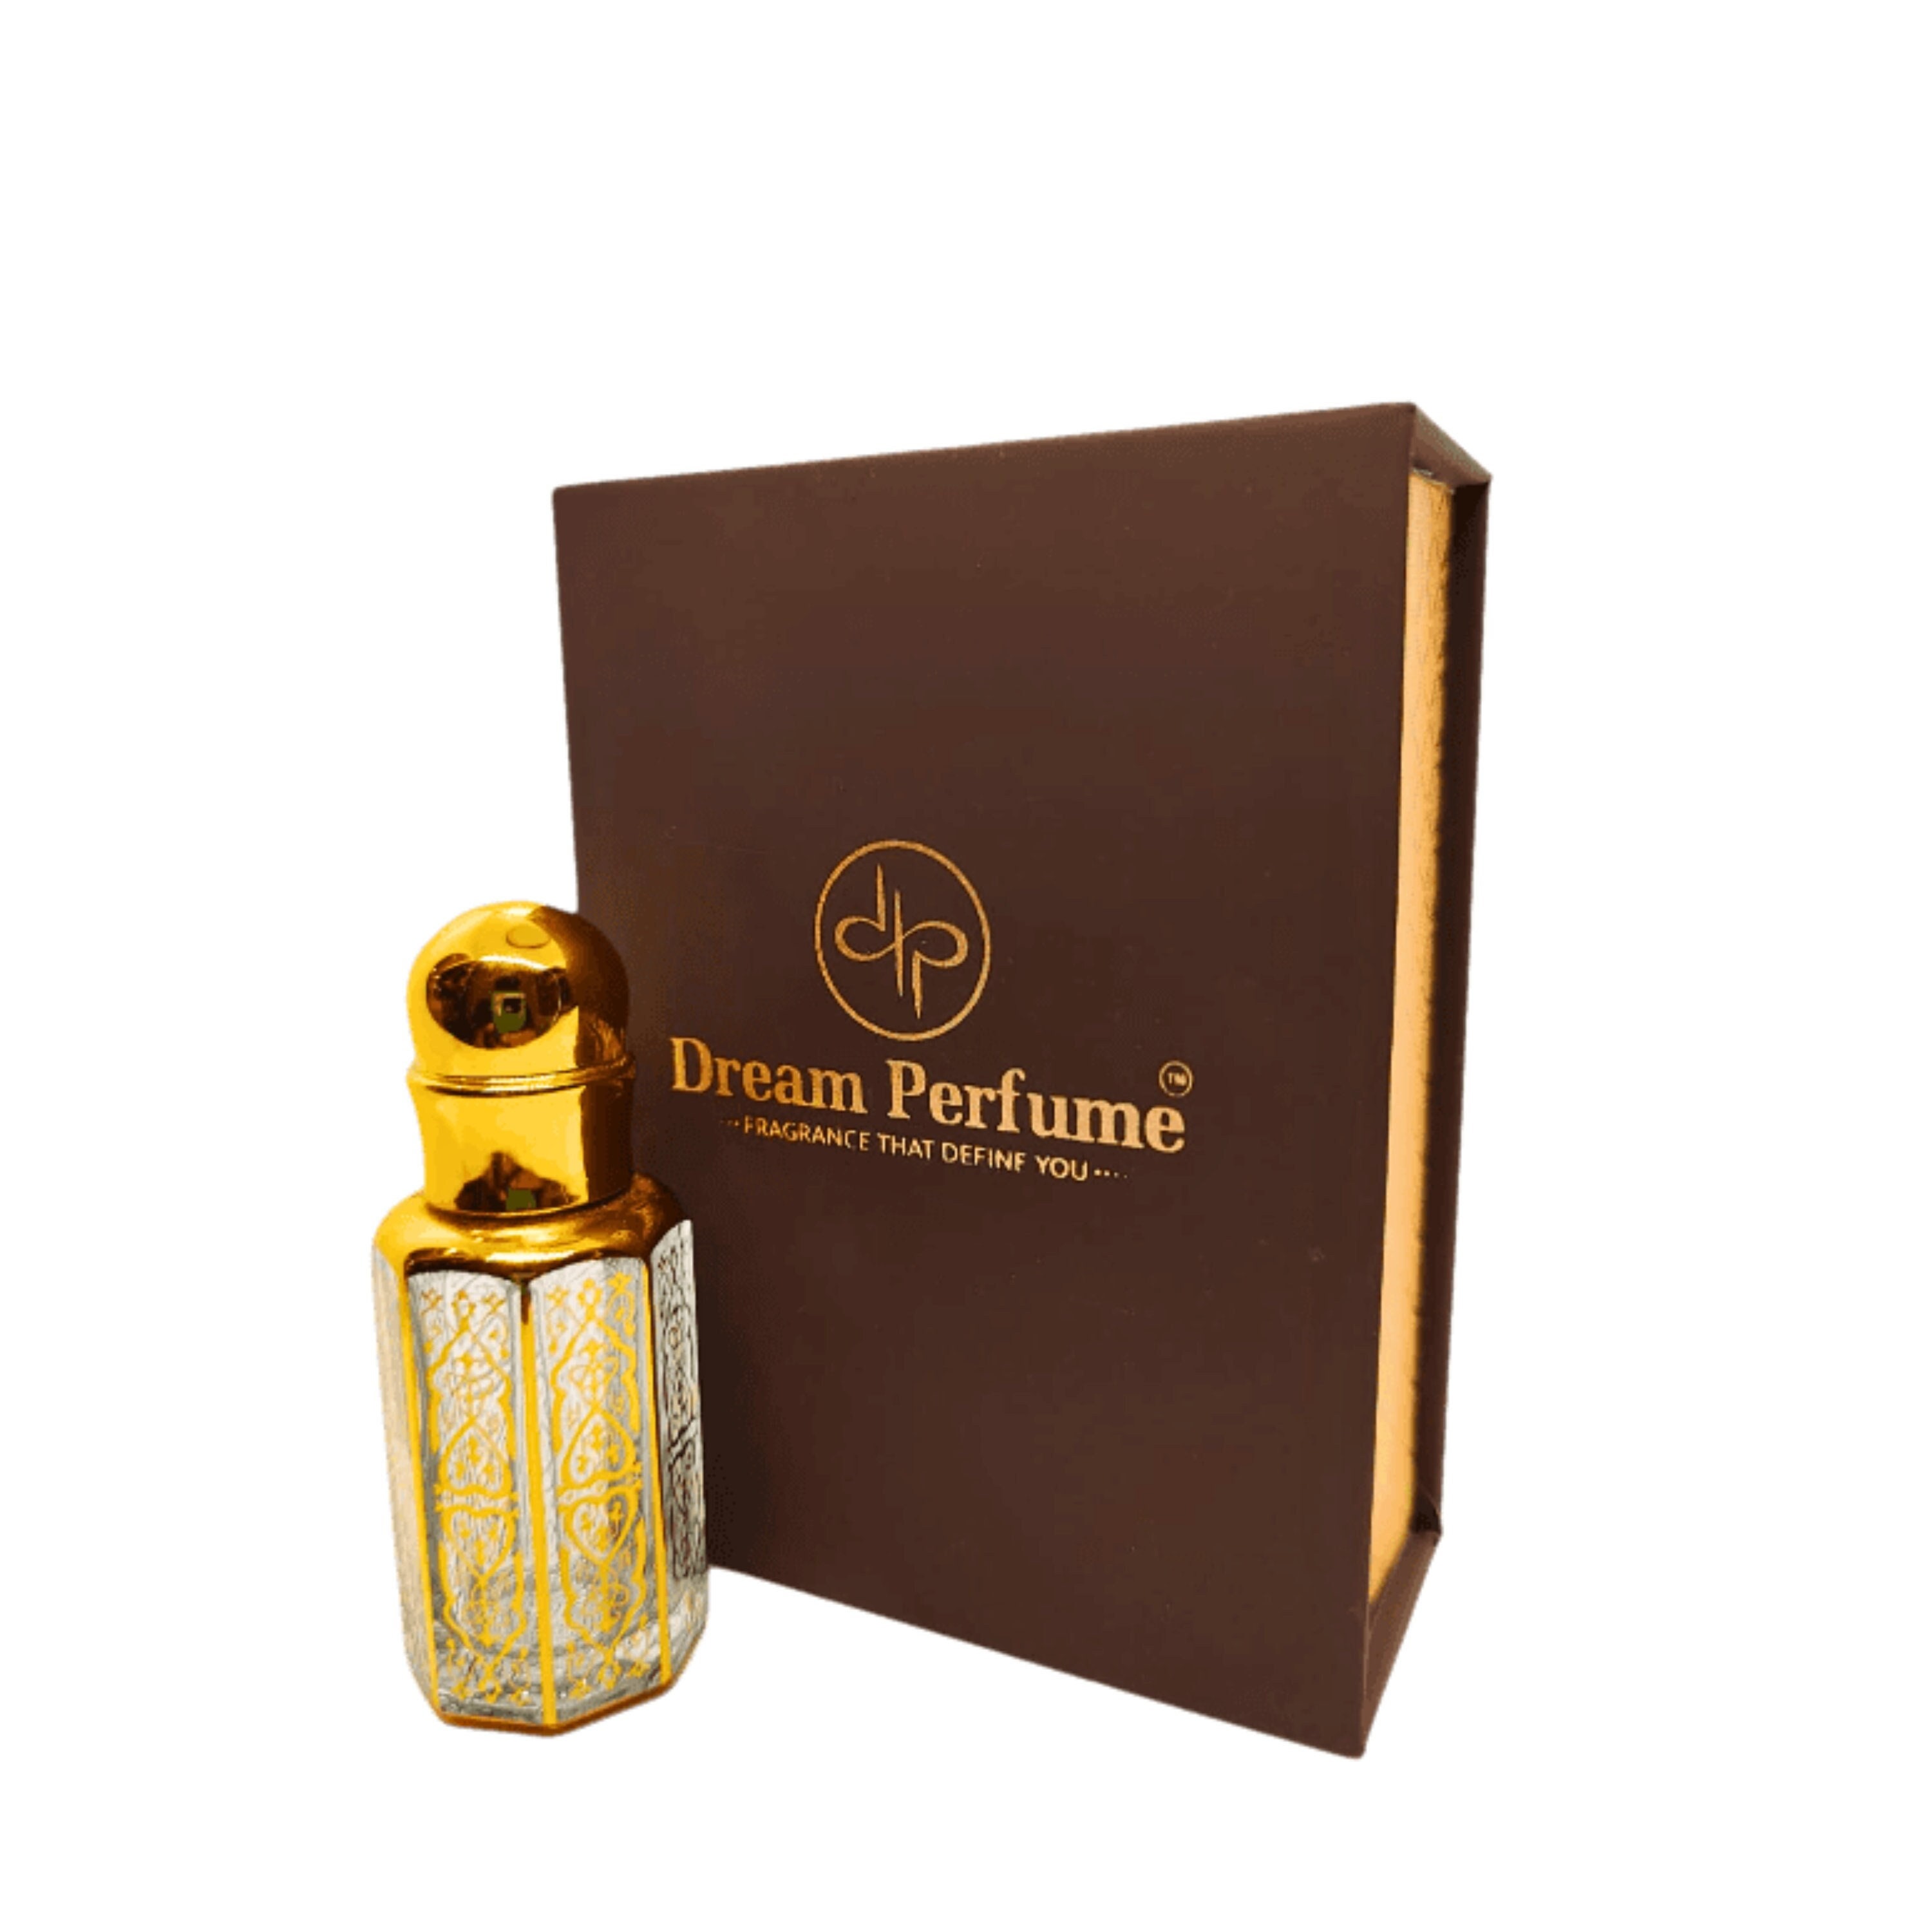 Amber Musk  Arabian Musk oil perfume – Abu Zari Fragrances USA